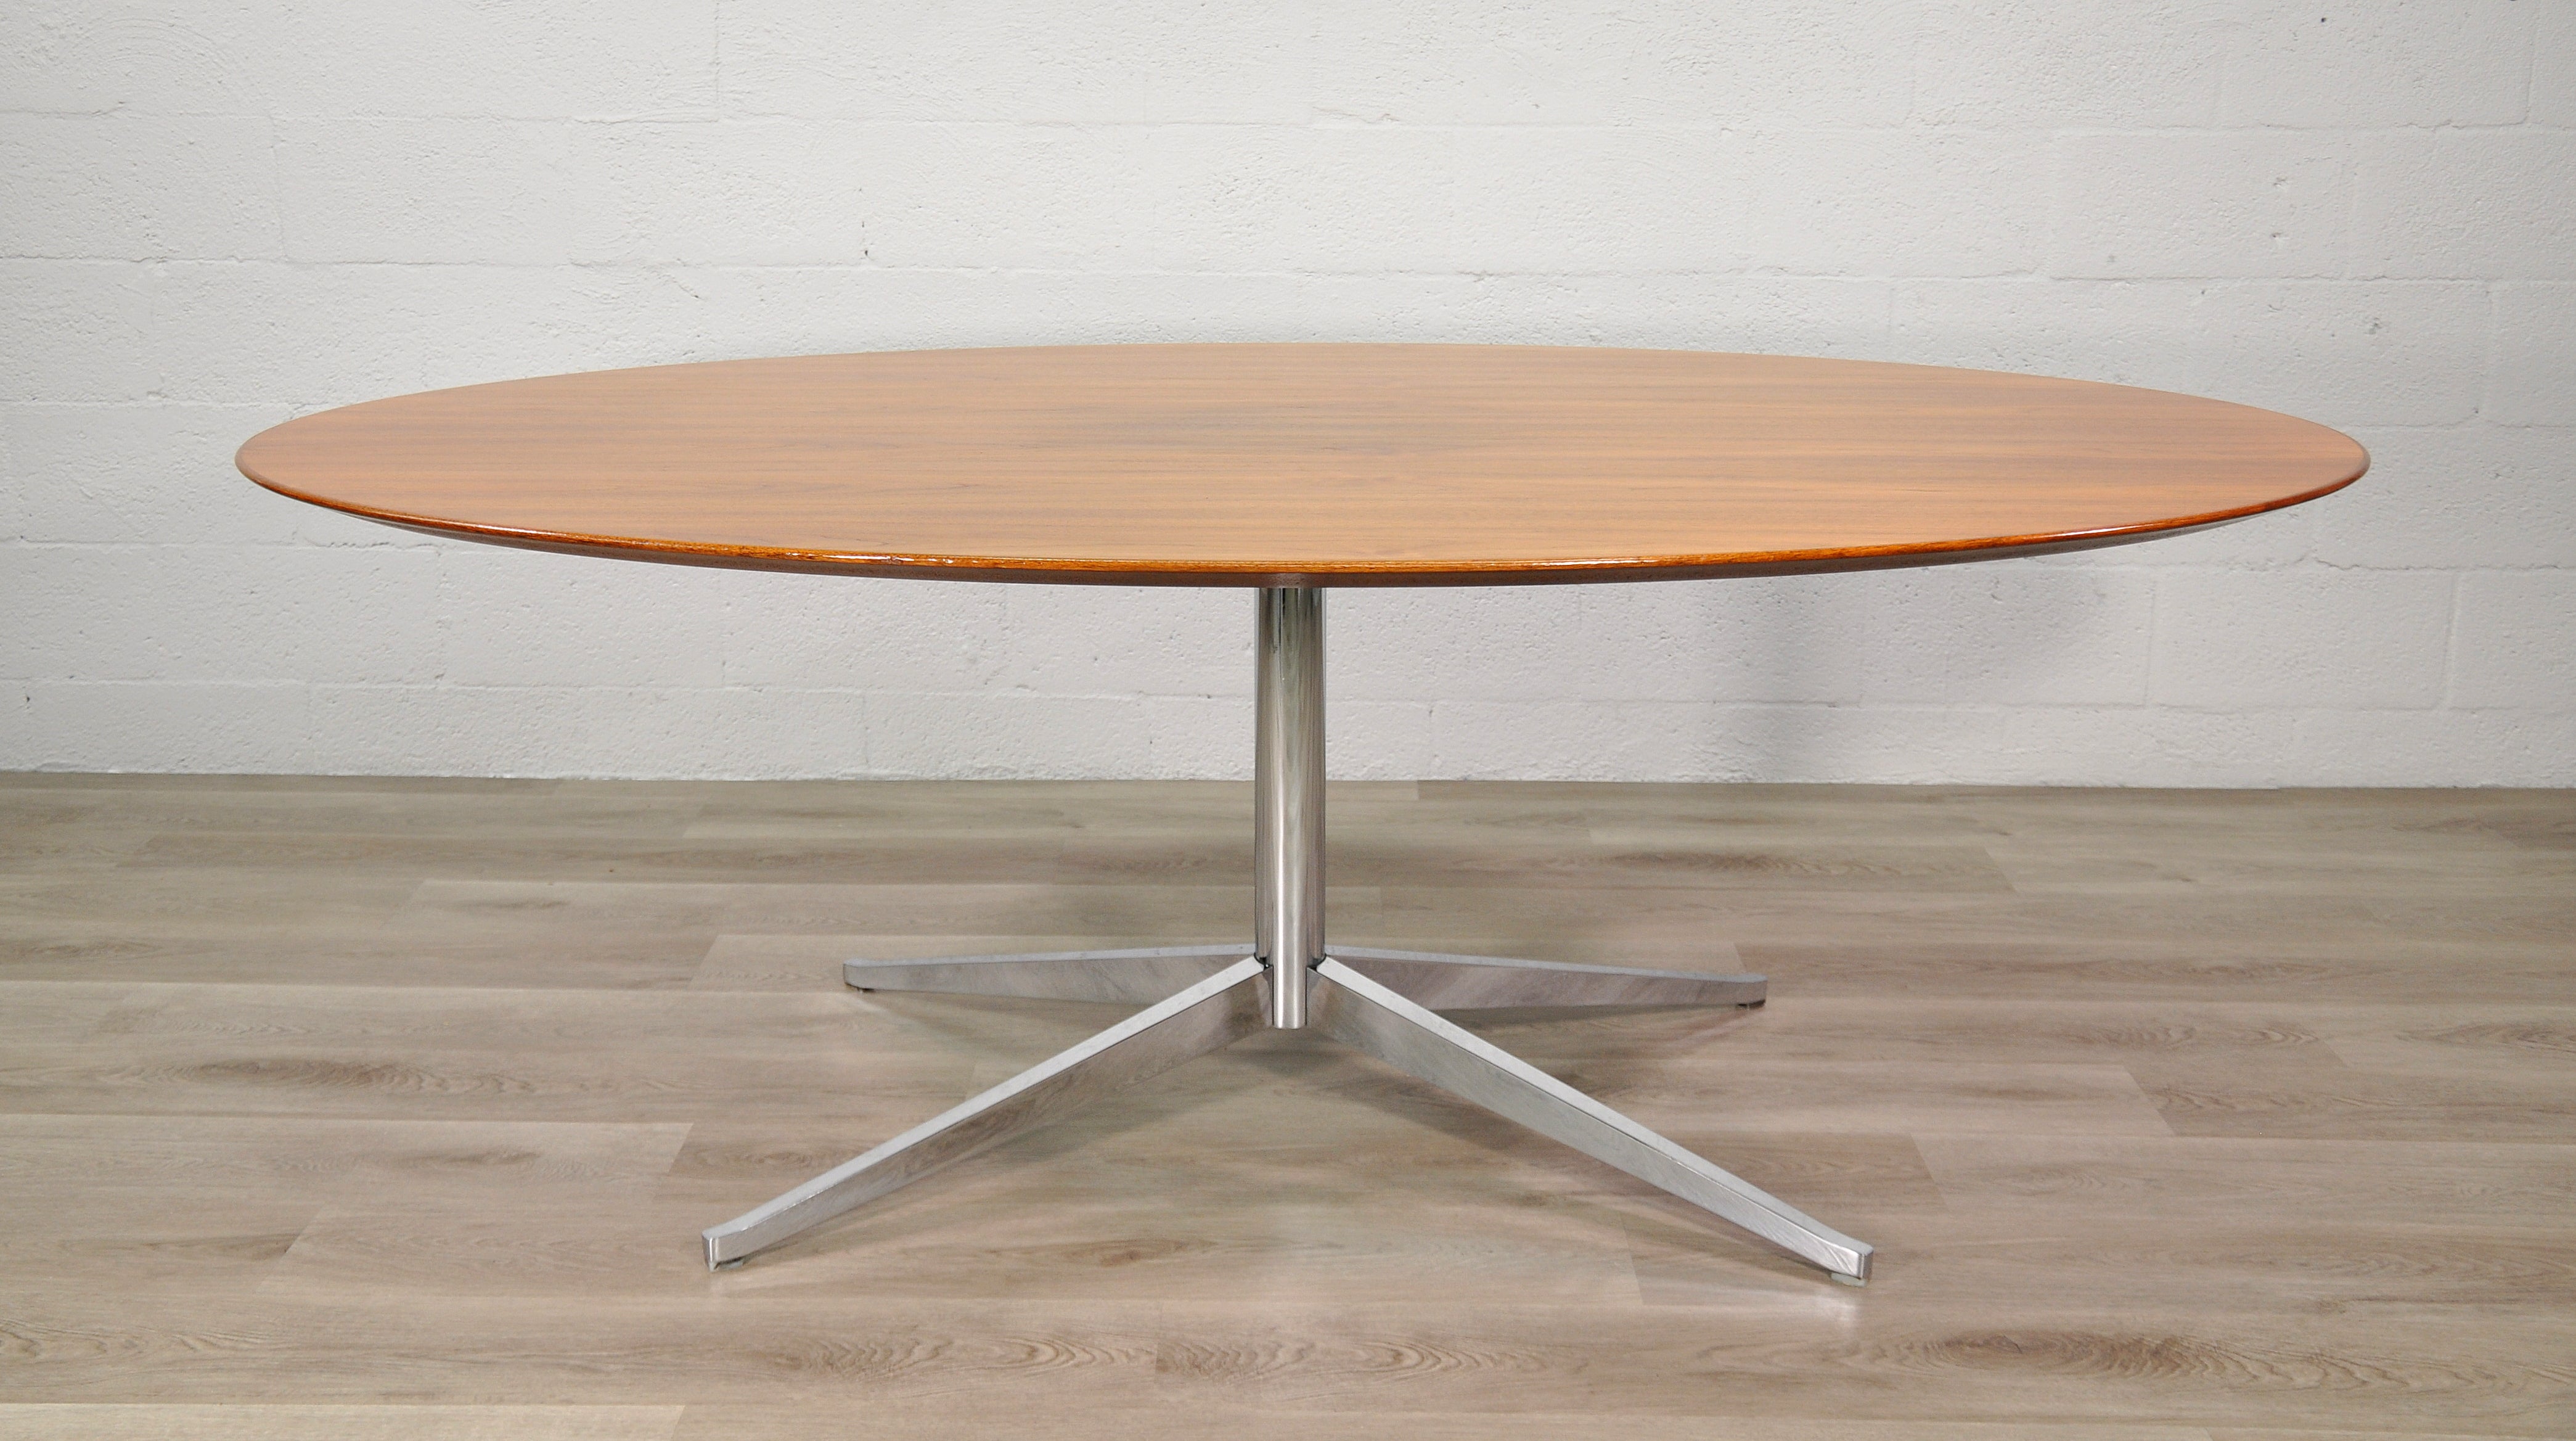 Vielseitiger Tisch 2480 mit Sockel, entworfen von Florence Knoll für Knoll International in den Vereinigten Staaten, aus den 1960er Jahren. Dieses ikonische Design zeichnet sich durch eine massive, ovale Platte aus Walnussholz aus, die auf einem